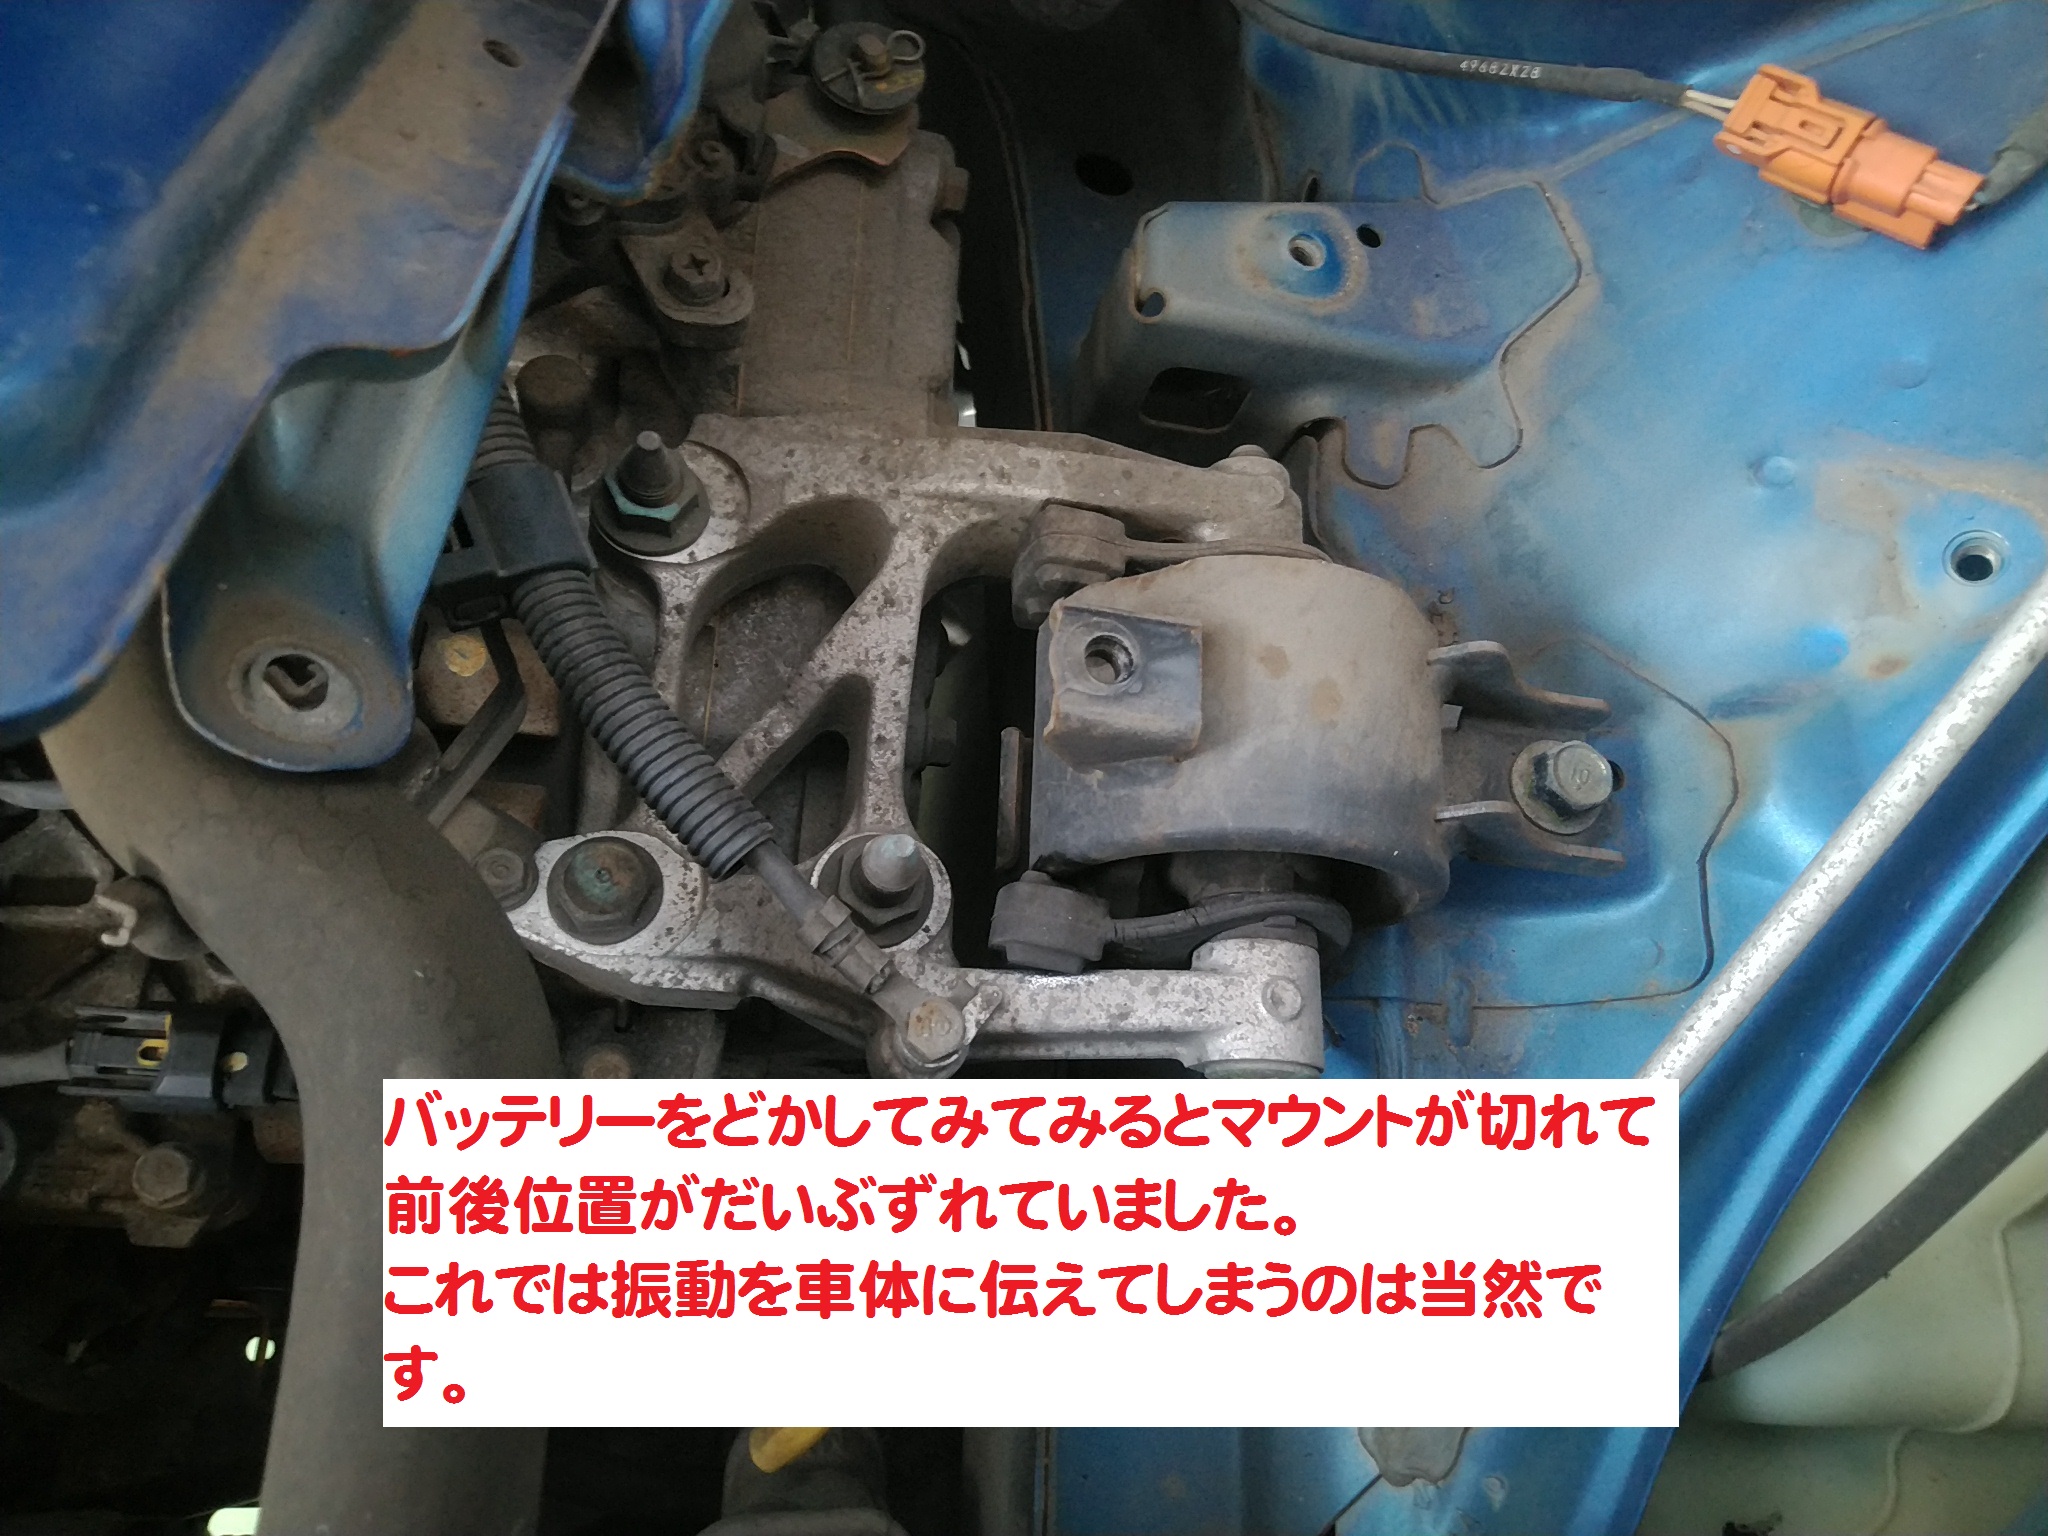 ホンダ モビリオ Gk1 エンジン振動が酷い 増高自動車工業有限会社